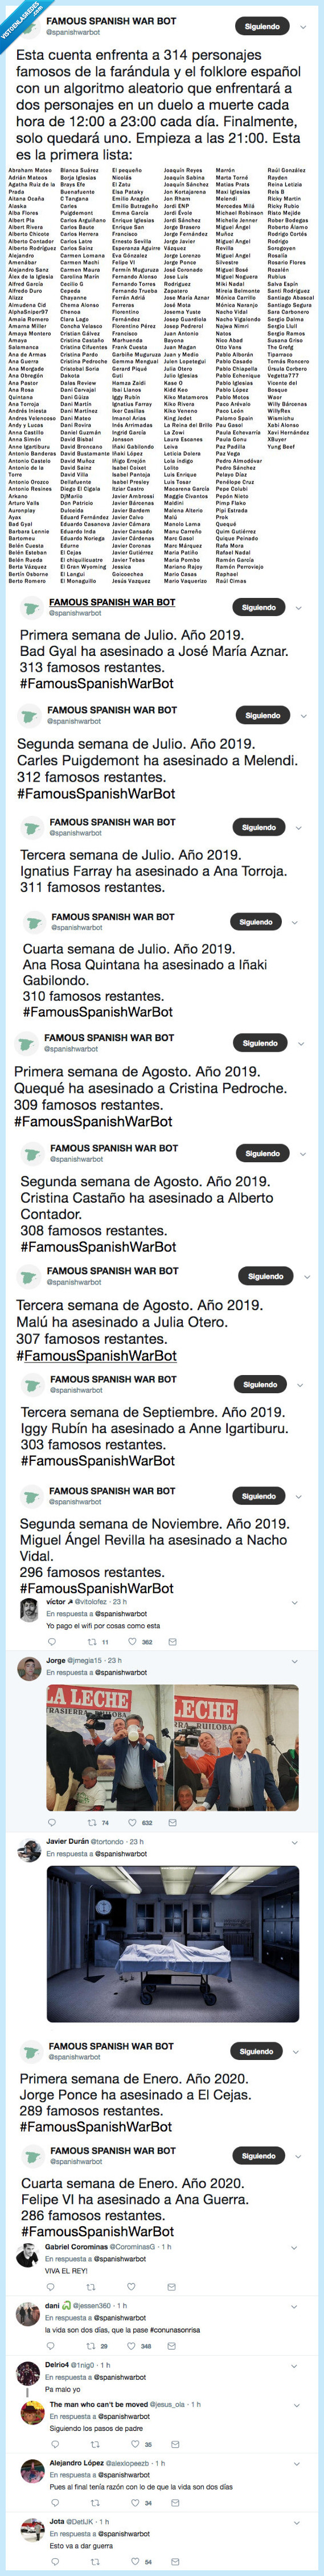 spanishwarbot,famosos,españa